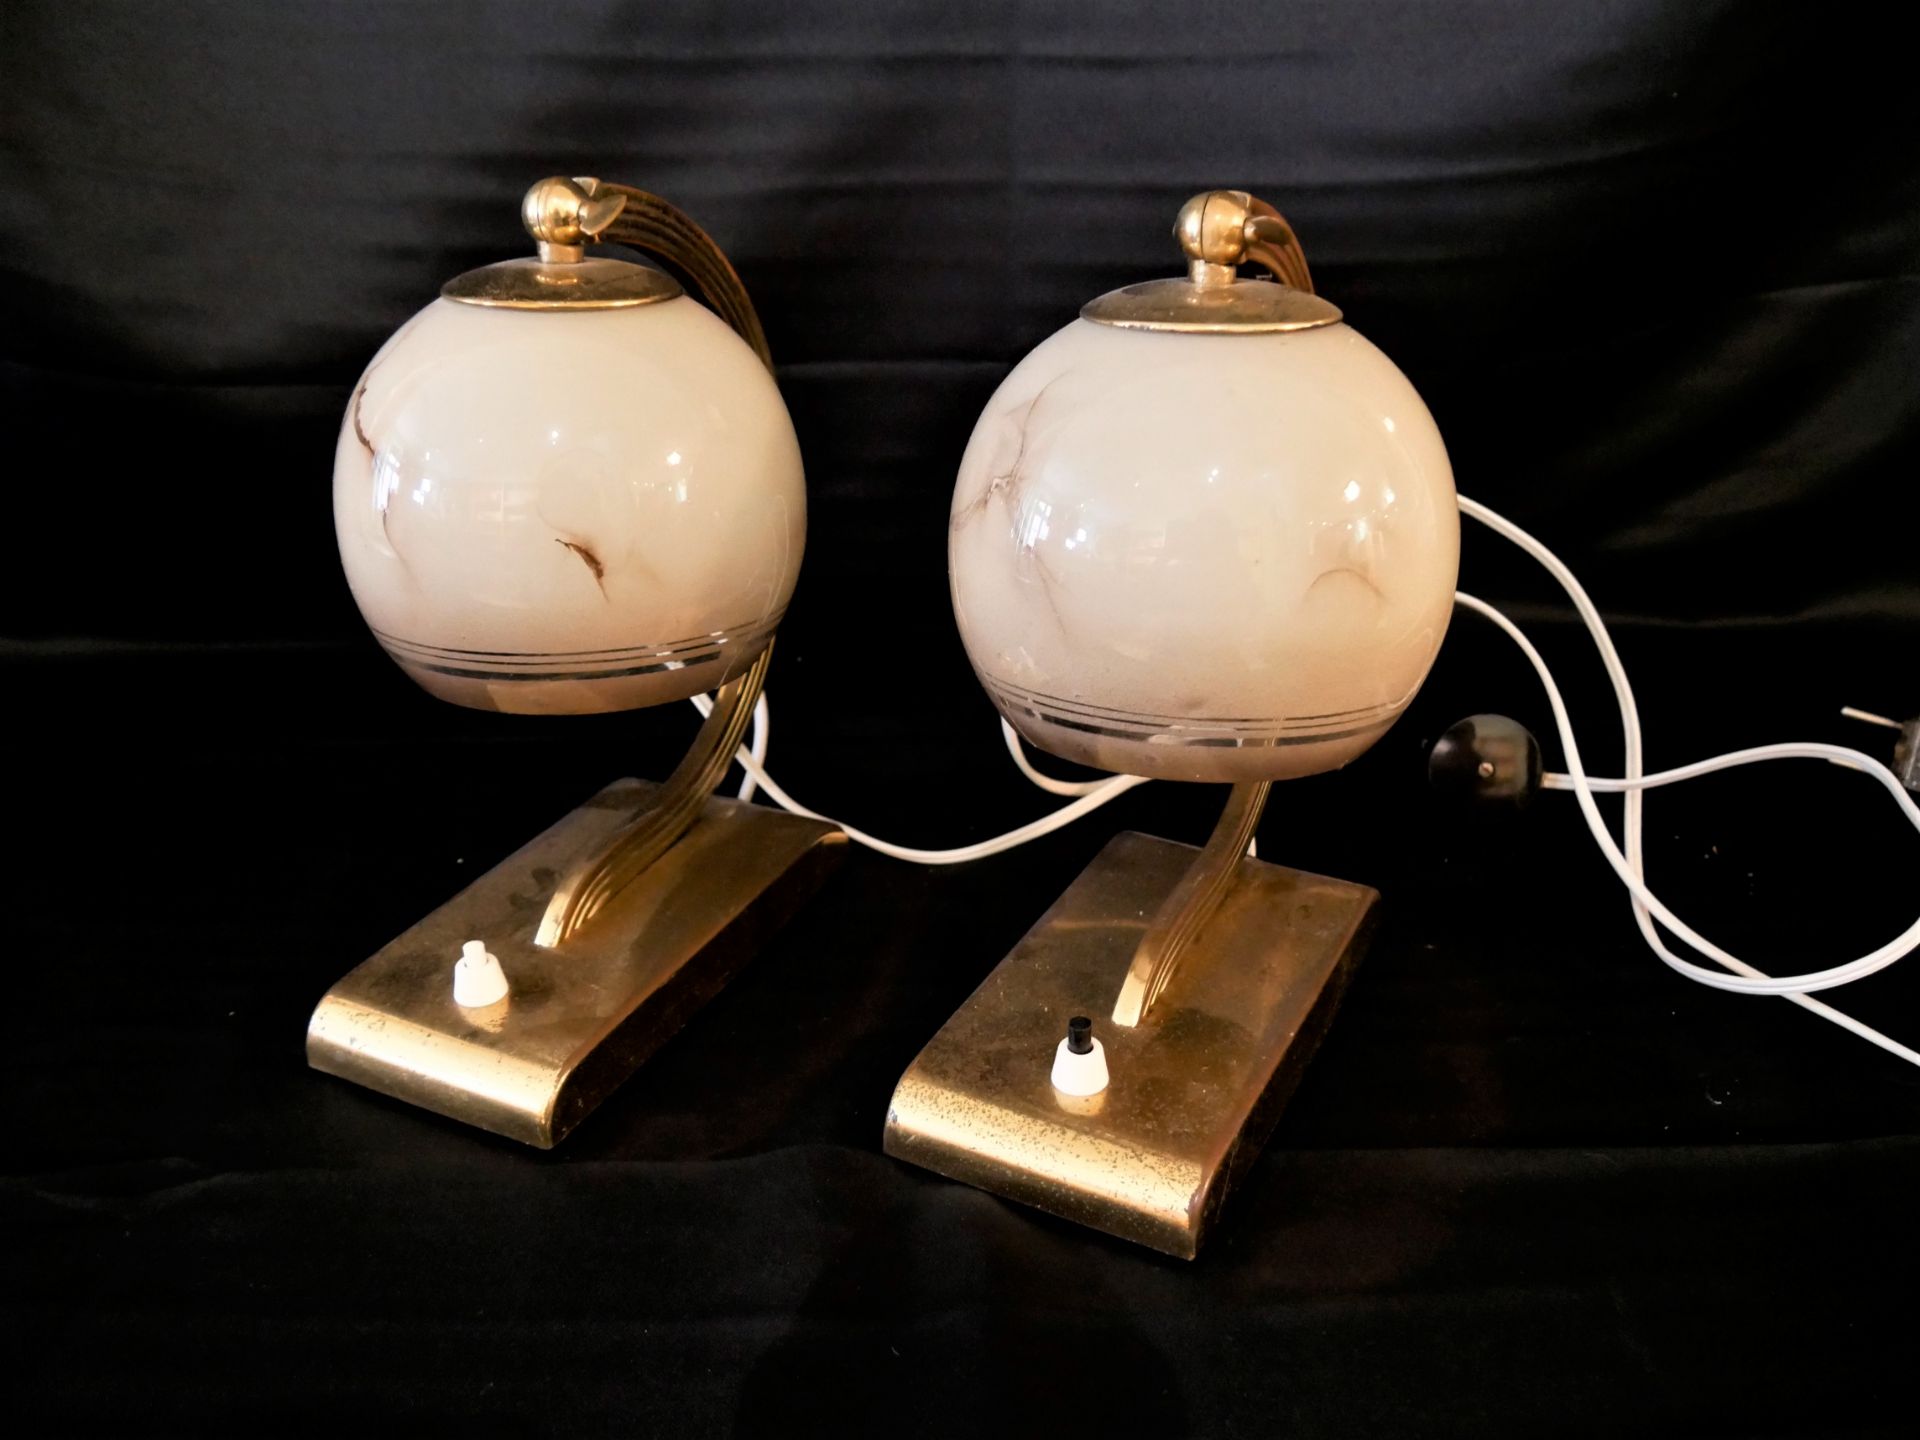 2 Tisch / Nachttischlampen, ca. 60er Jahre. Mit braun/beigem Glasschirm. Höhe ca. 23 cm. Funktion